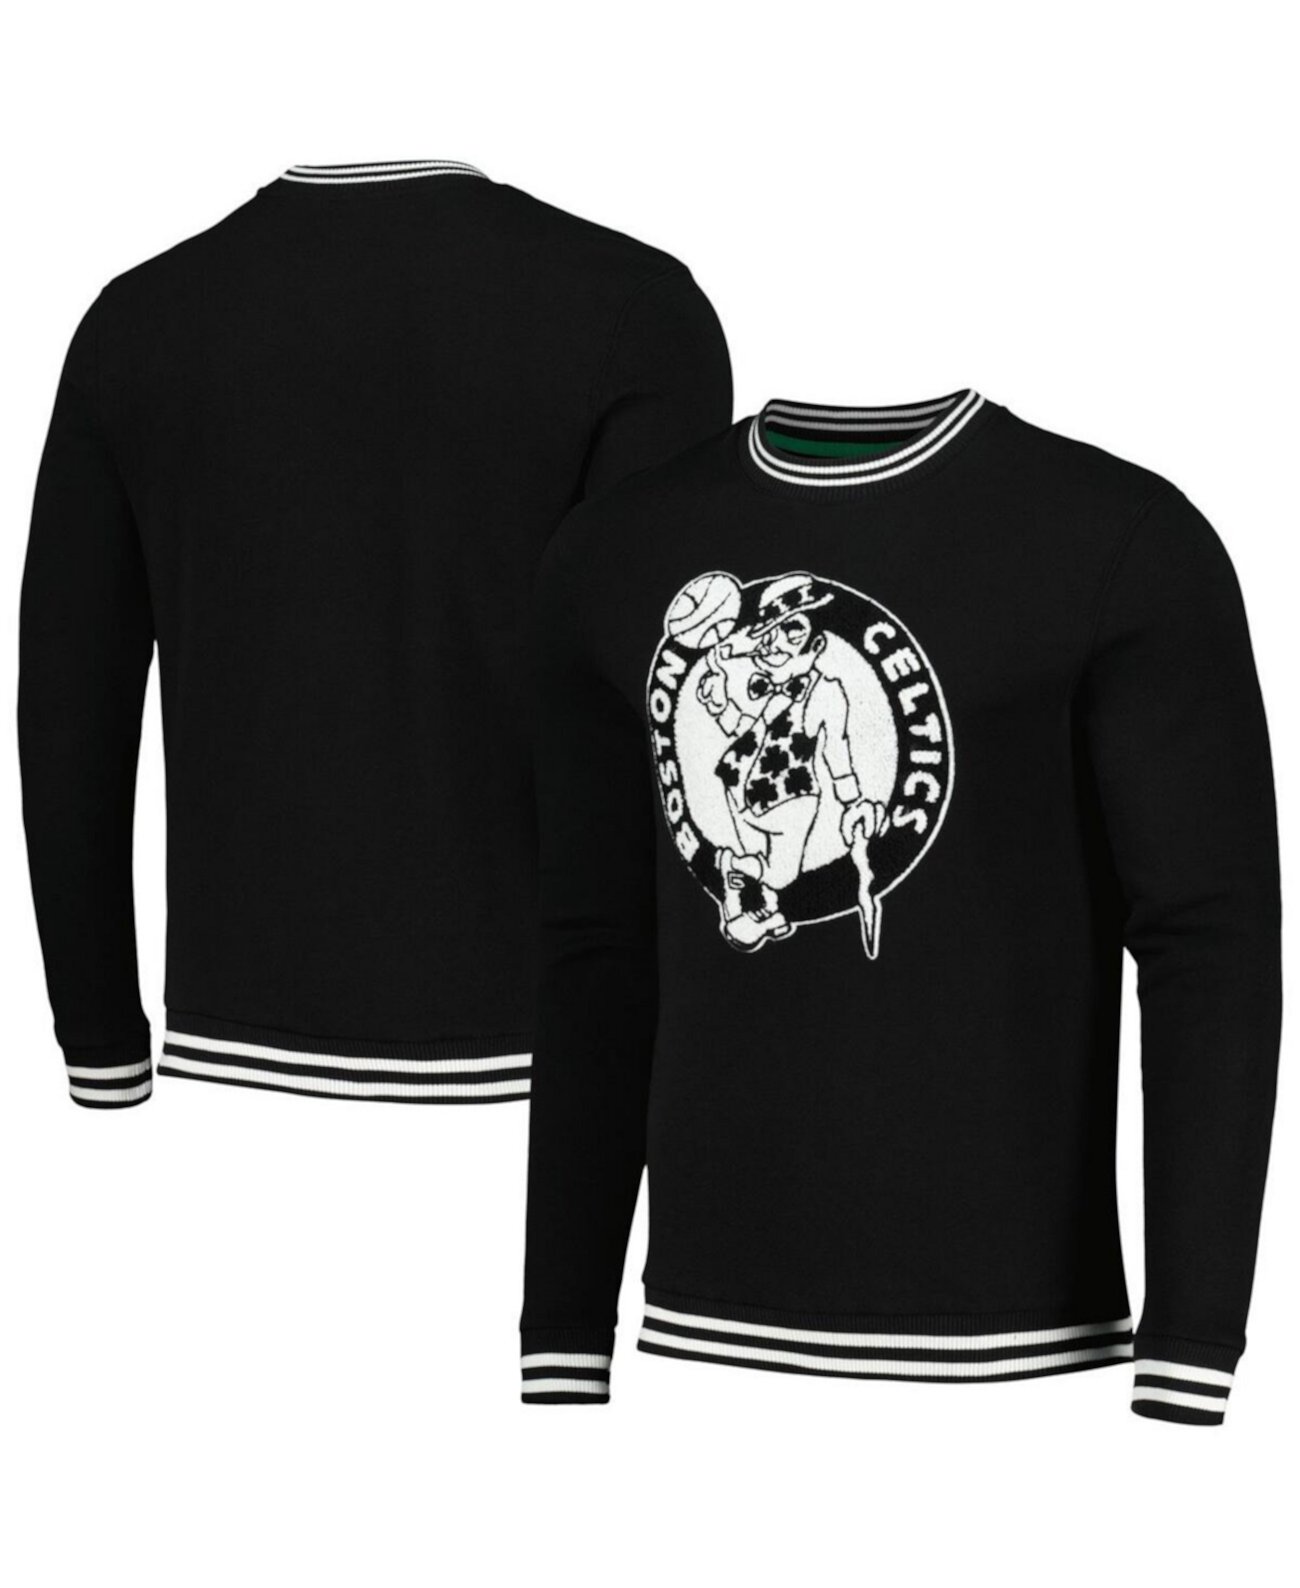 Мужской черный пуловер Boston Celtics Club Level свитшот Stadium Essentials